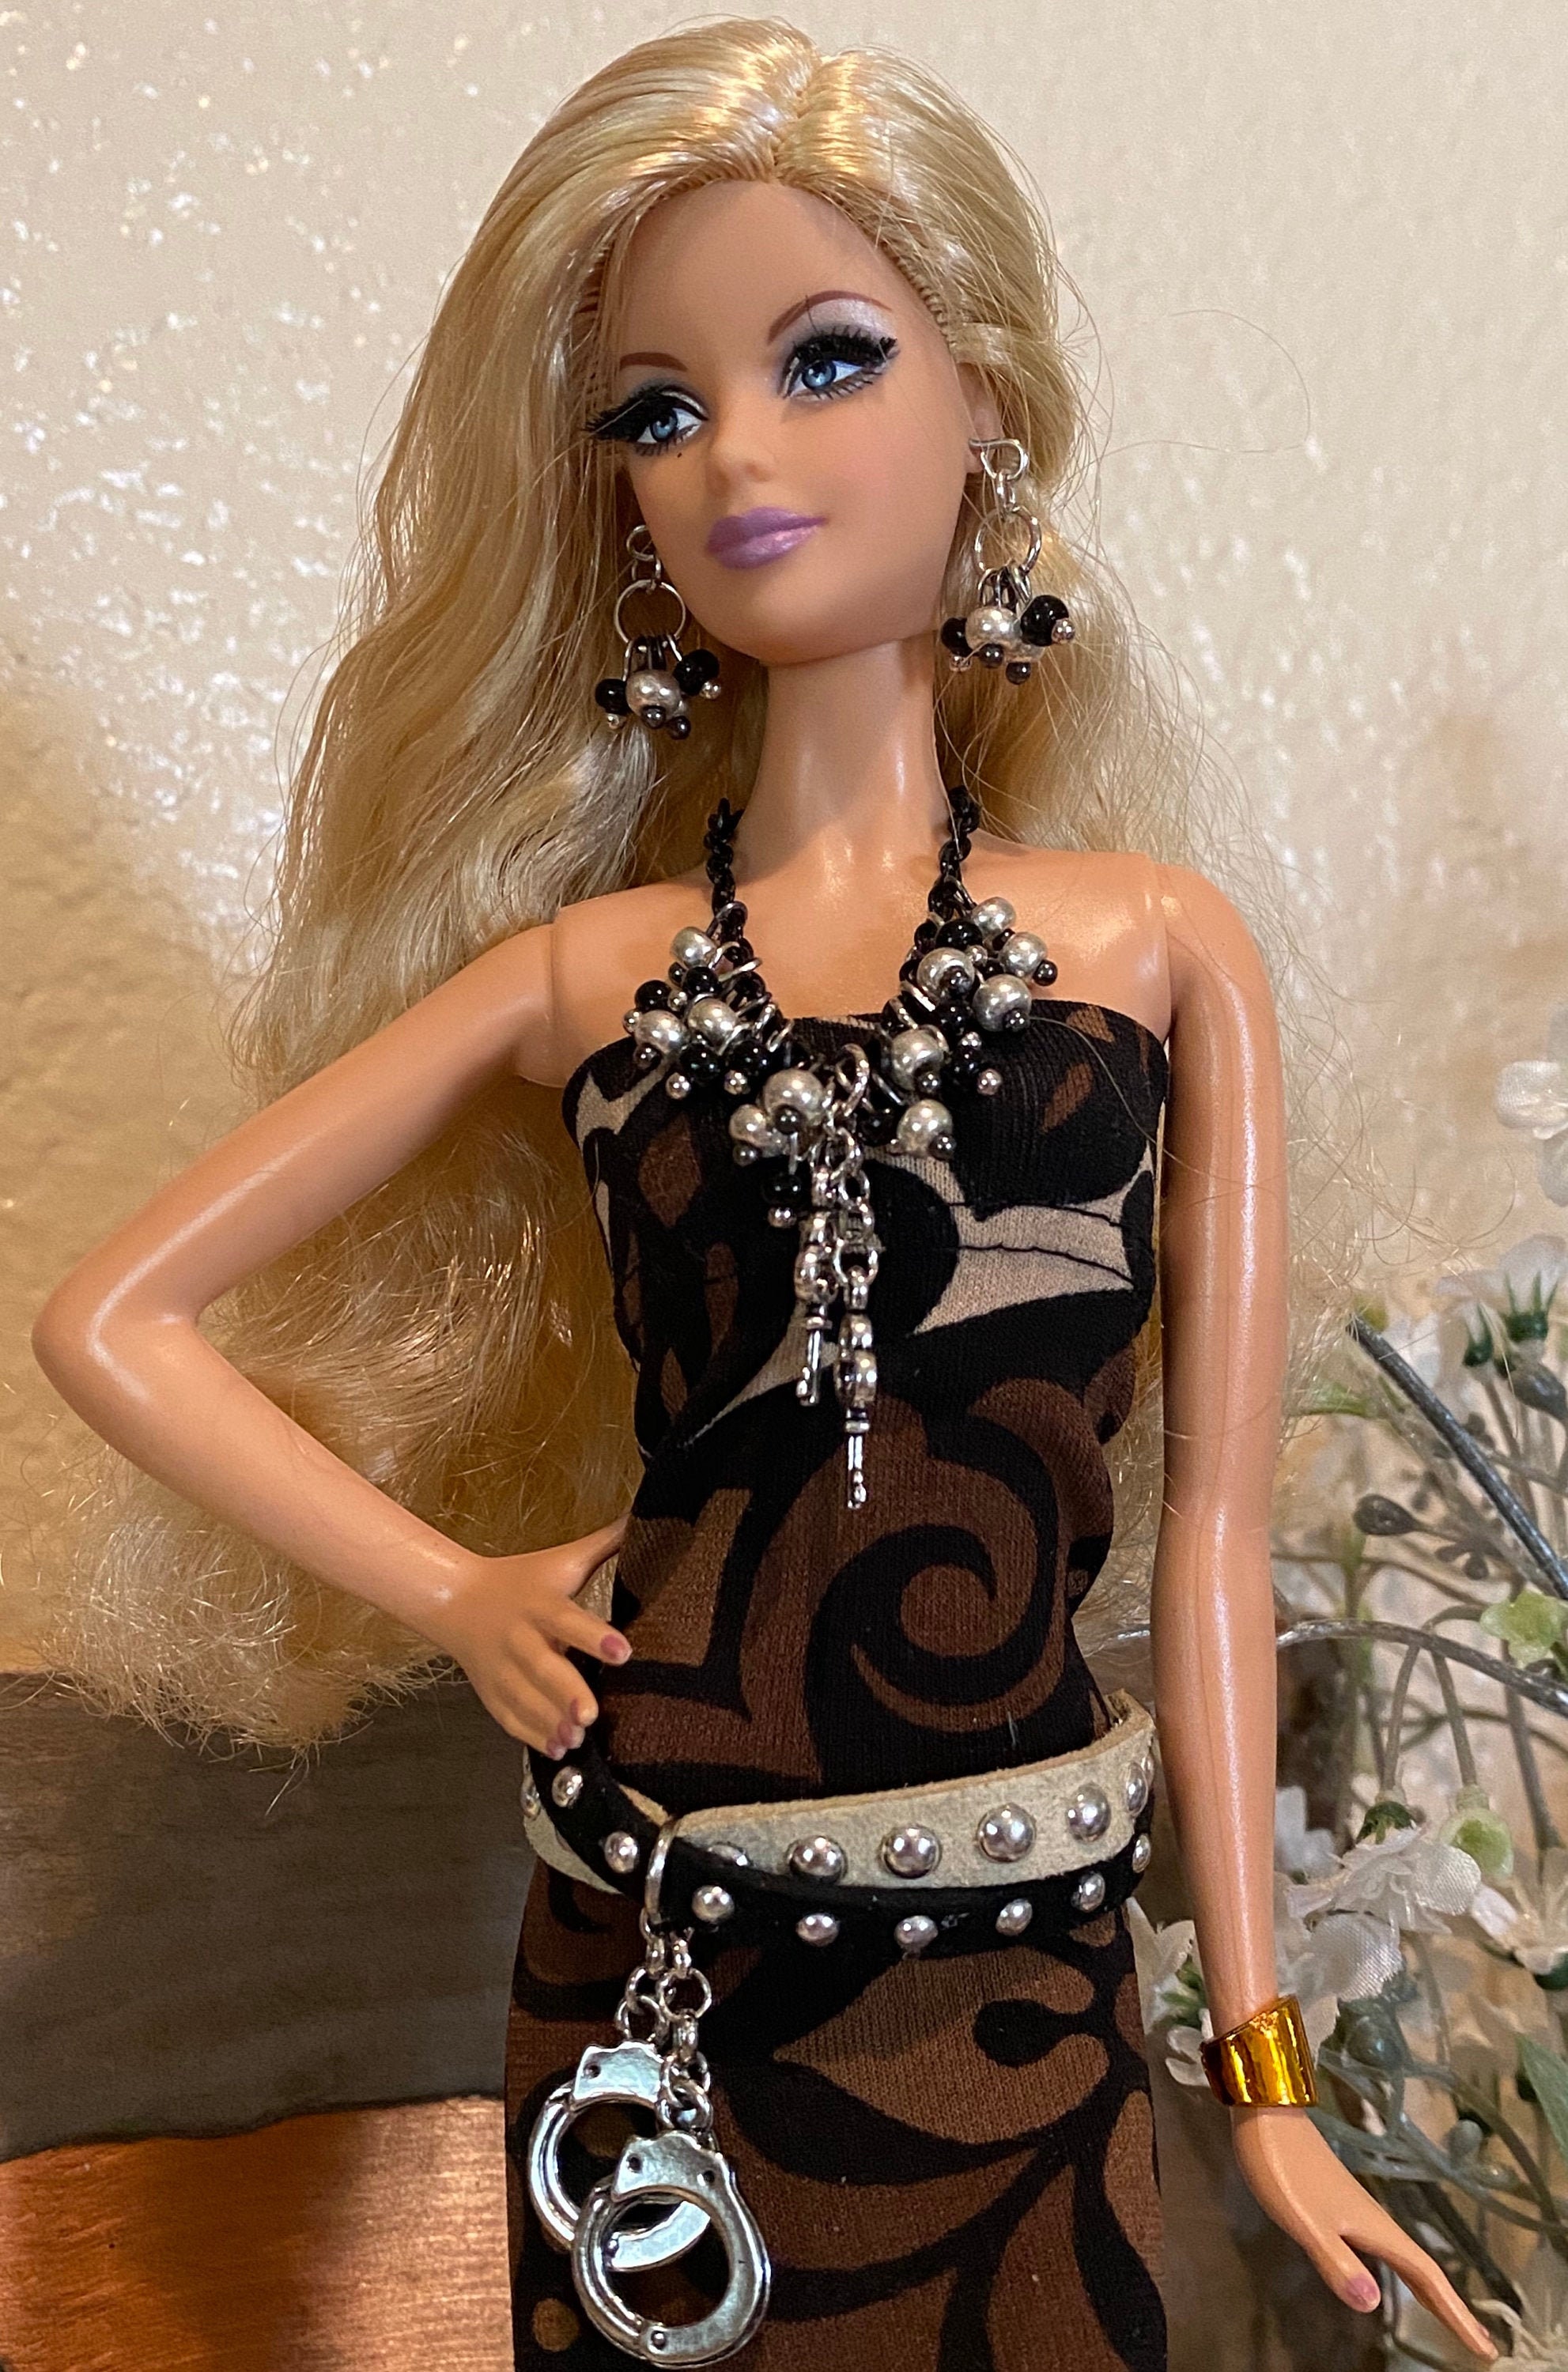 Barbie Dildo Porn - Barbie Dildo - Etsy